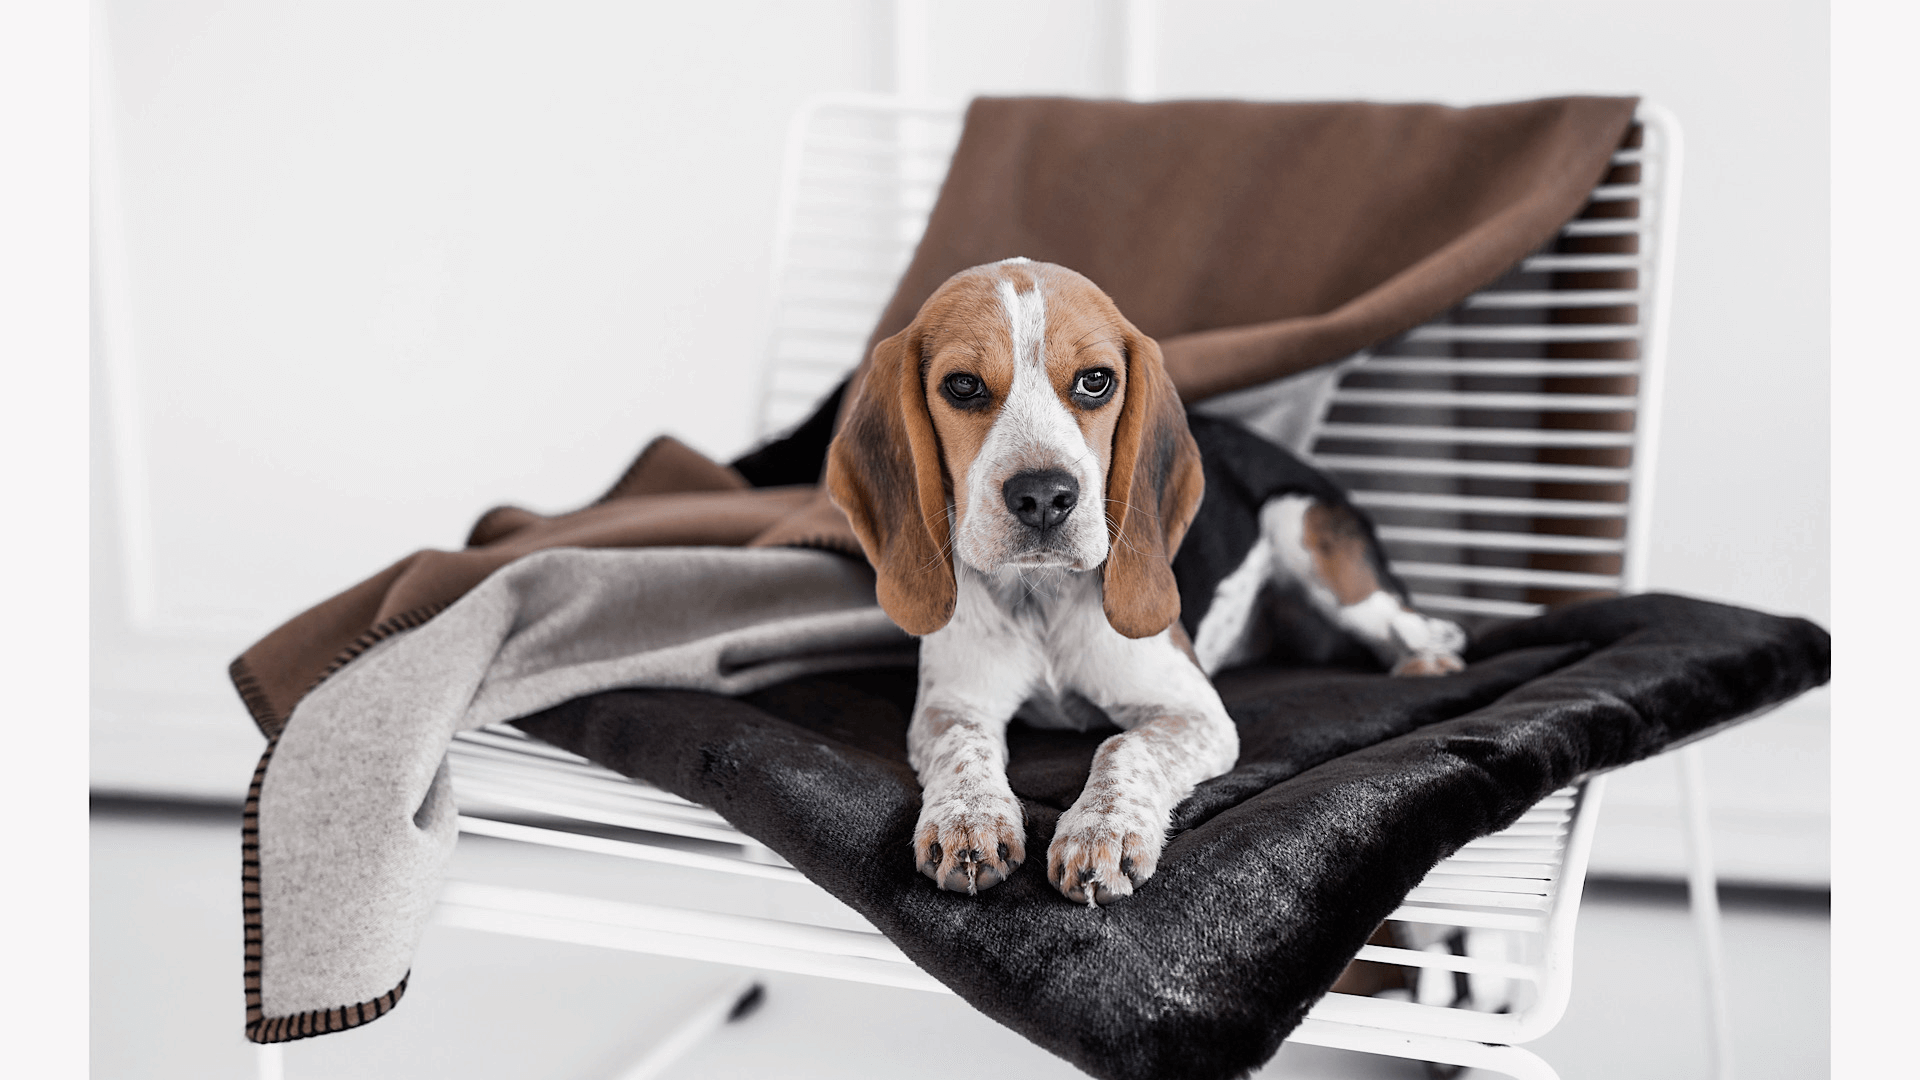 Szenebild süßer Beagle liegt auf einem braunen Webpelz Kissen, welches auf einem weissen Stuhl platziert wurde. Über die Rückenlehne des Stuhls ist eine braune Wolldecke drapiert. Den Hintergrund bildet eine weisse Stuckwand. 